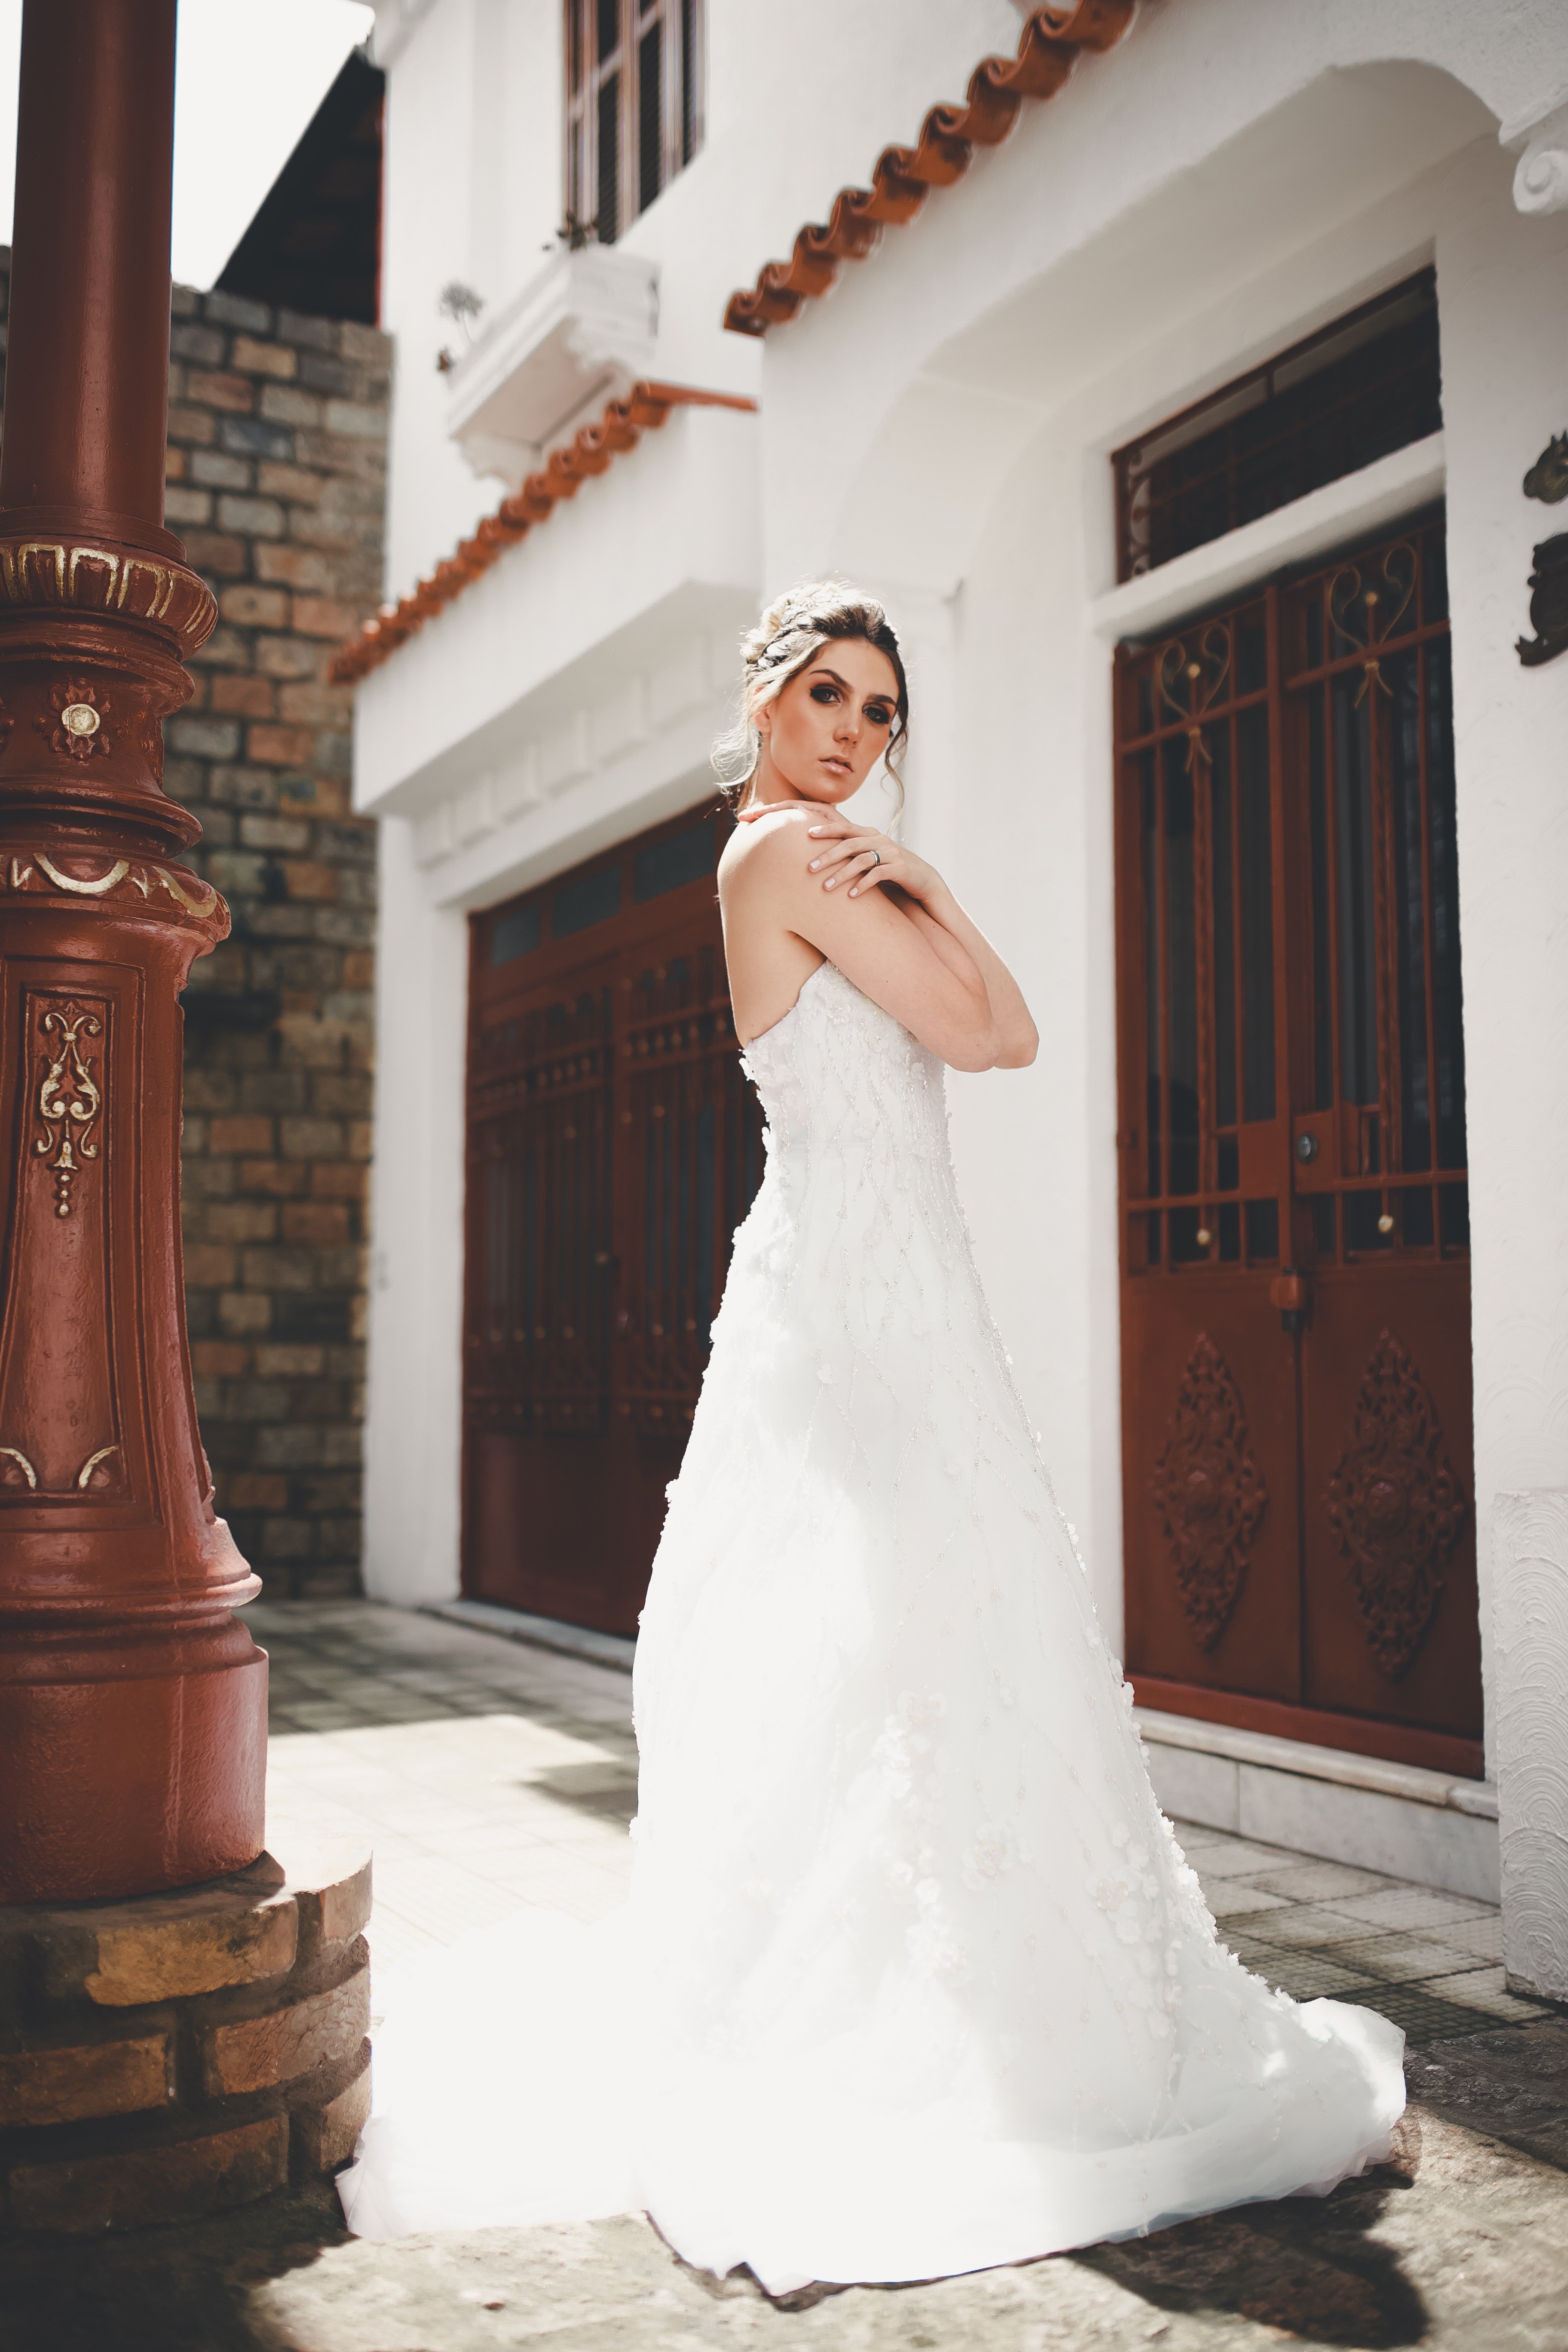 Une mariée. | Photo : Pexels